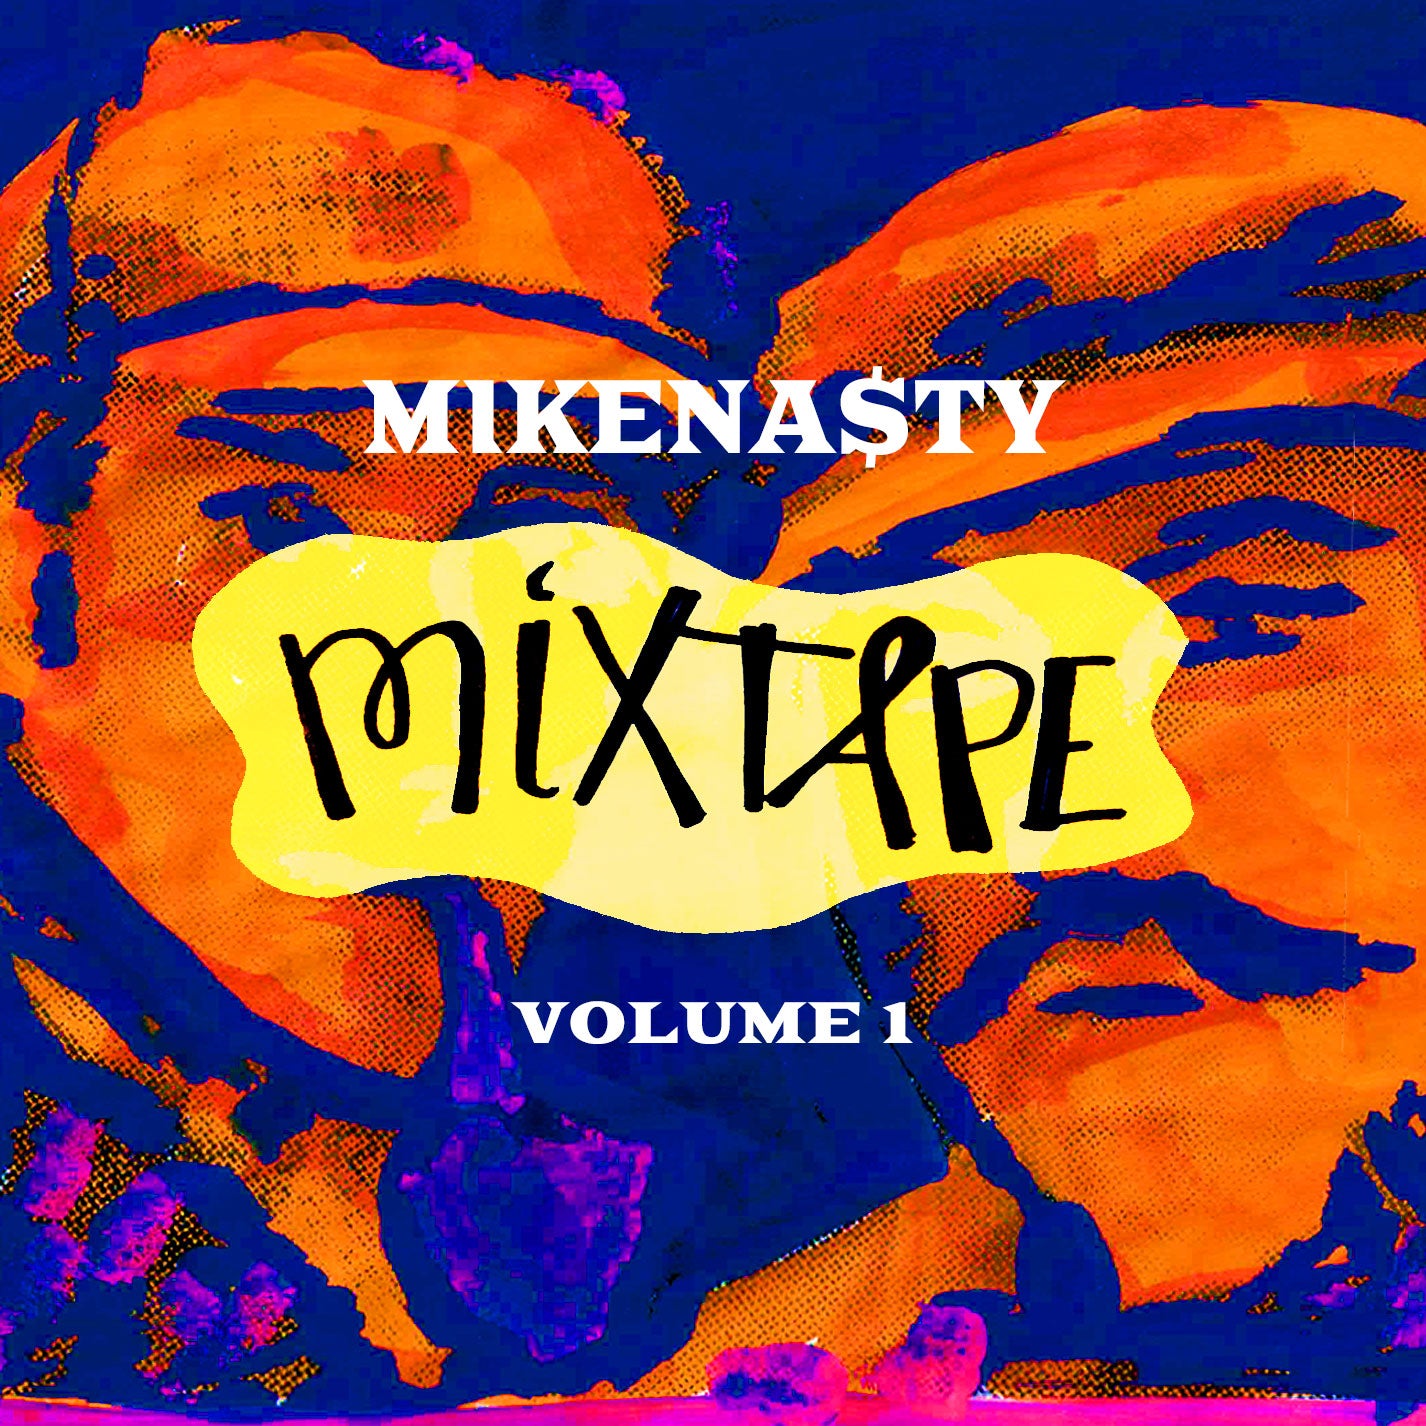 Feedback - Mikenasty Mixtape Vol.1